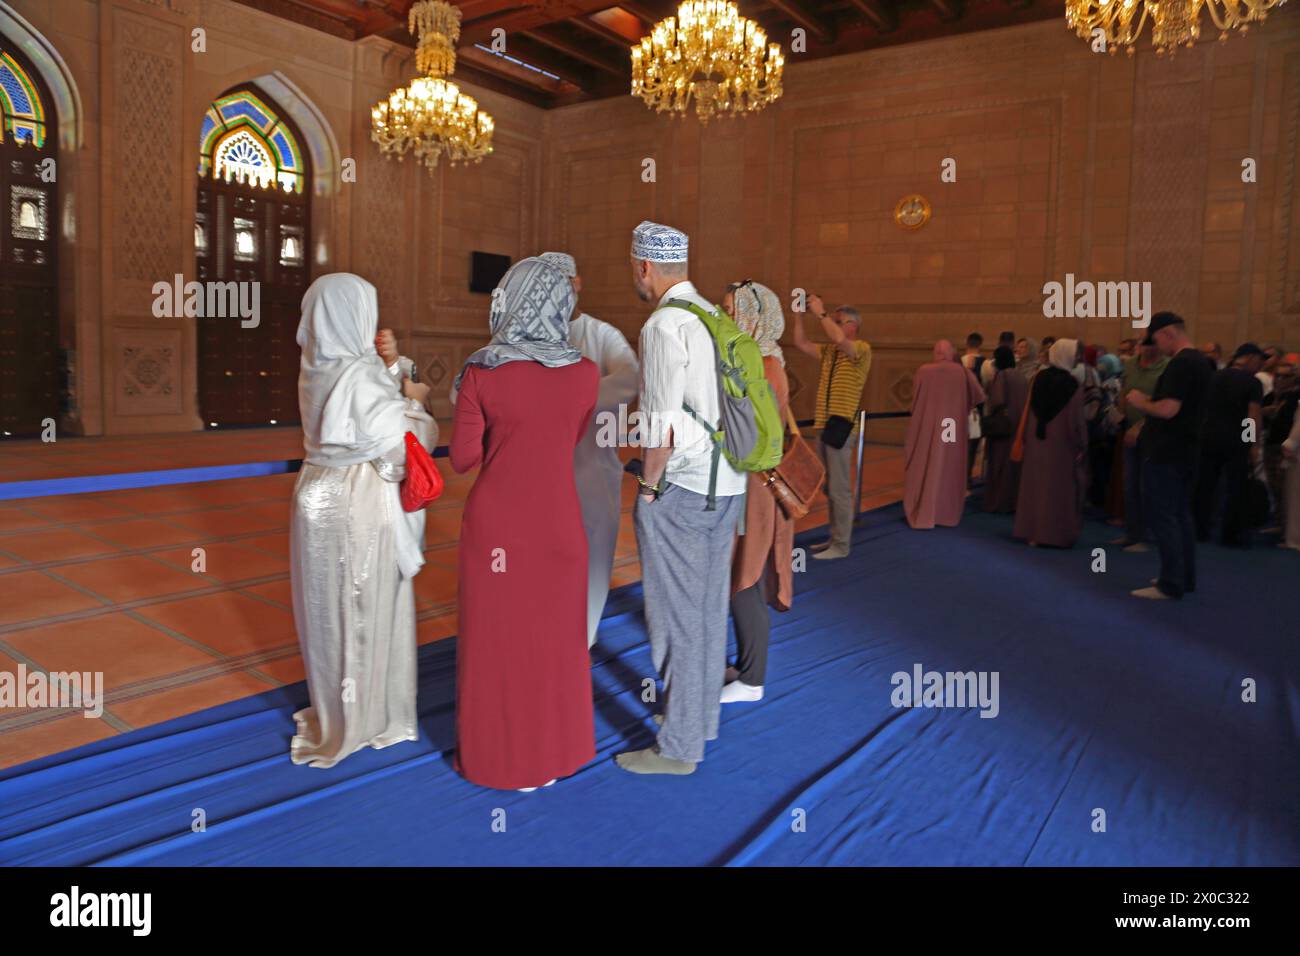 Sultan Qaboos Grande Mosquée touristes debout sur couverture bleue pour protéger le tapis de prière dans la salle de prière des femmes Muscat Oman Banque D'Images